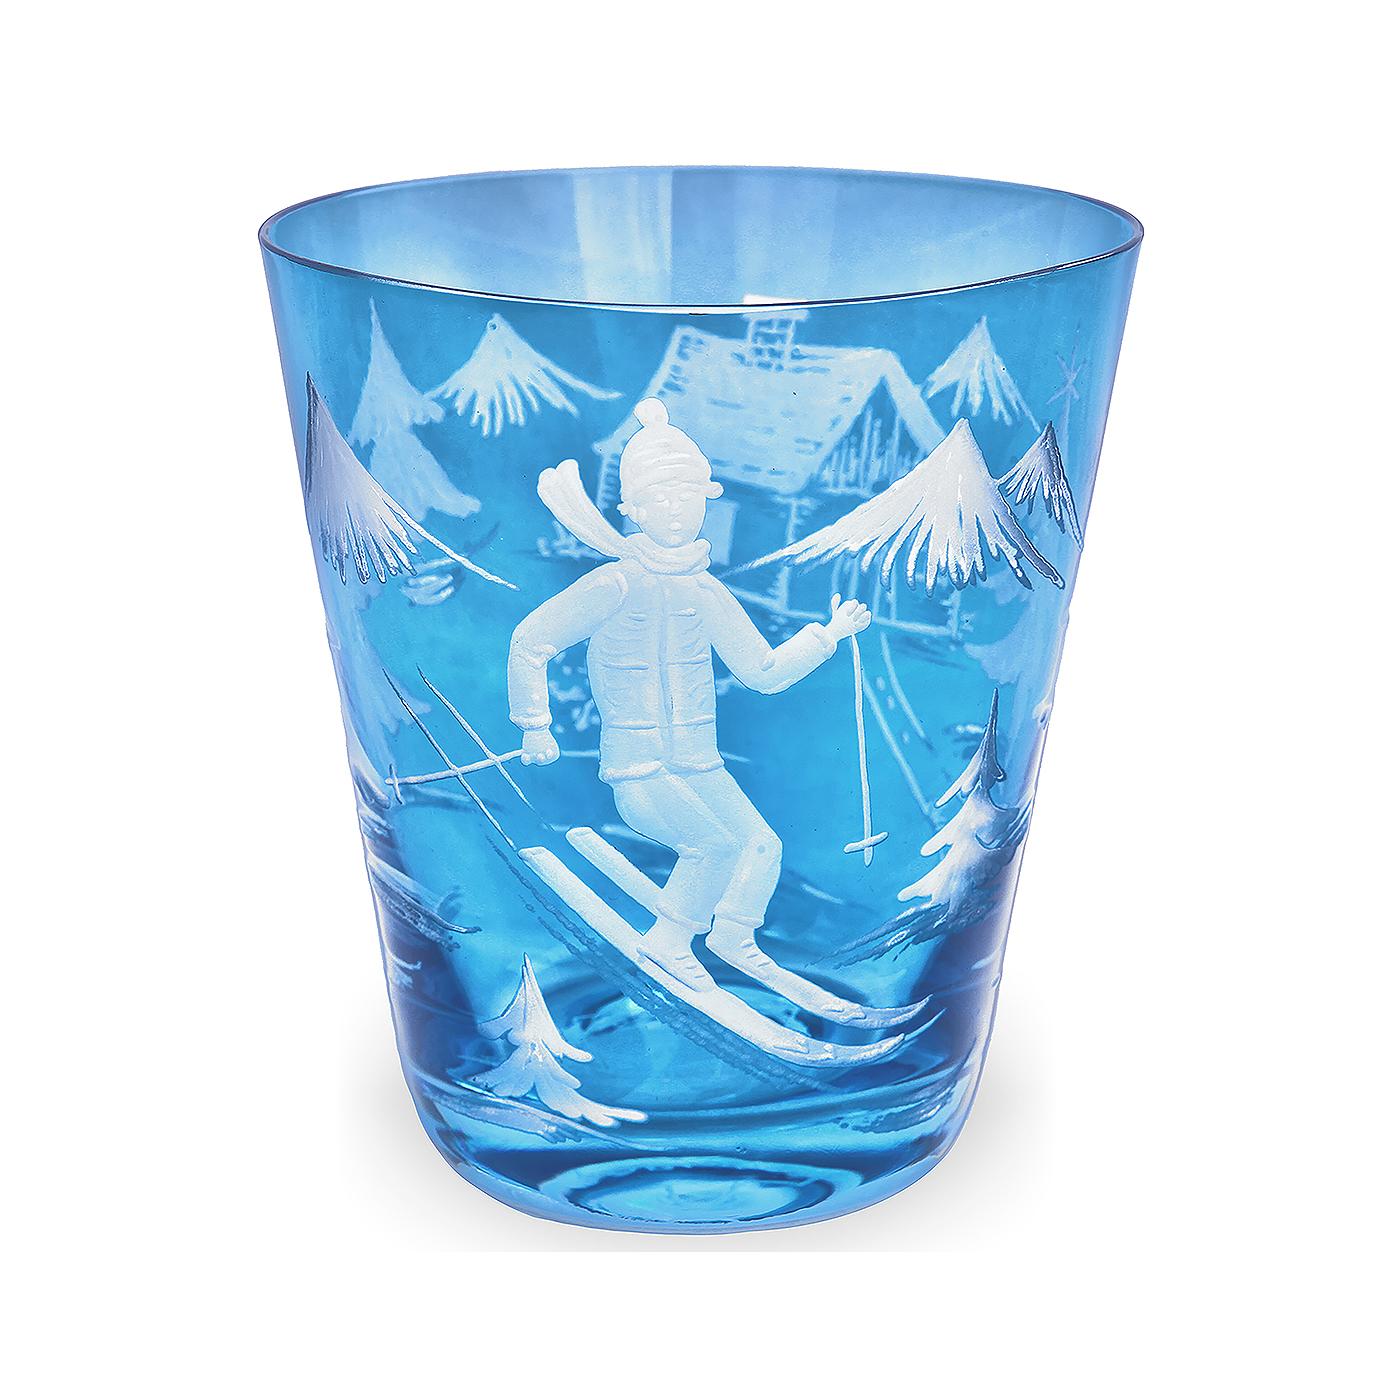 Set aus sechs mundgeblasenen Bechern in blauem Kristall mit handgeschliffenem Skifahrerdekor. Das ländliche Dekor zeigt  ein Skifahrerjunge, Bäume und Berge und eine Hütte auf dem Glas. Eine passende Kristallkaraffe kann zusätzlich bestellt werden.